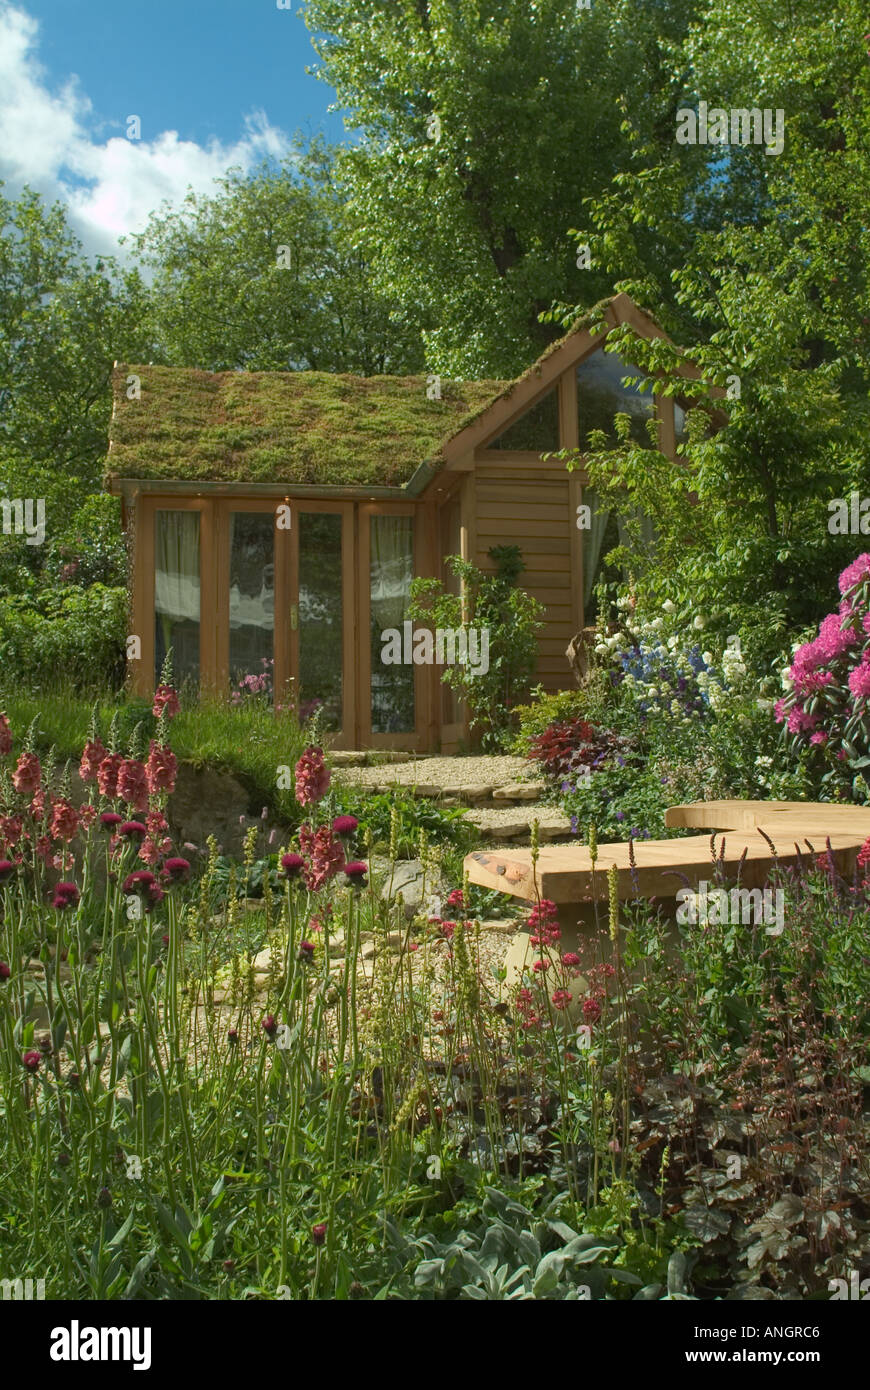 Les fiducies de la faune jardin luxuriant conçu par Stephen Hall au Chelsea Flower Show 2005 Banque D'Images